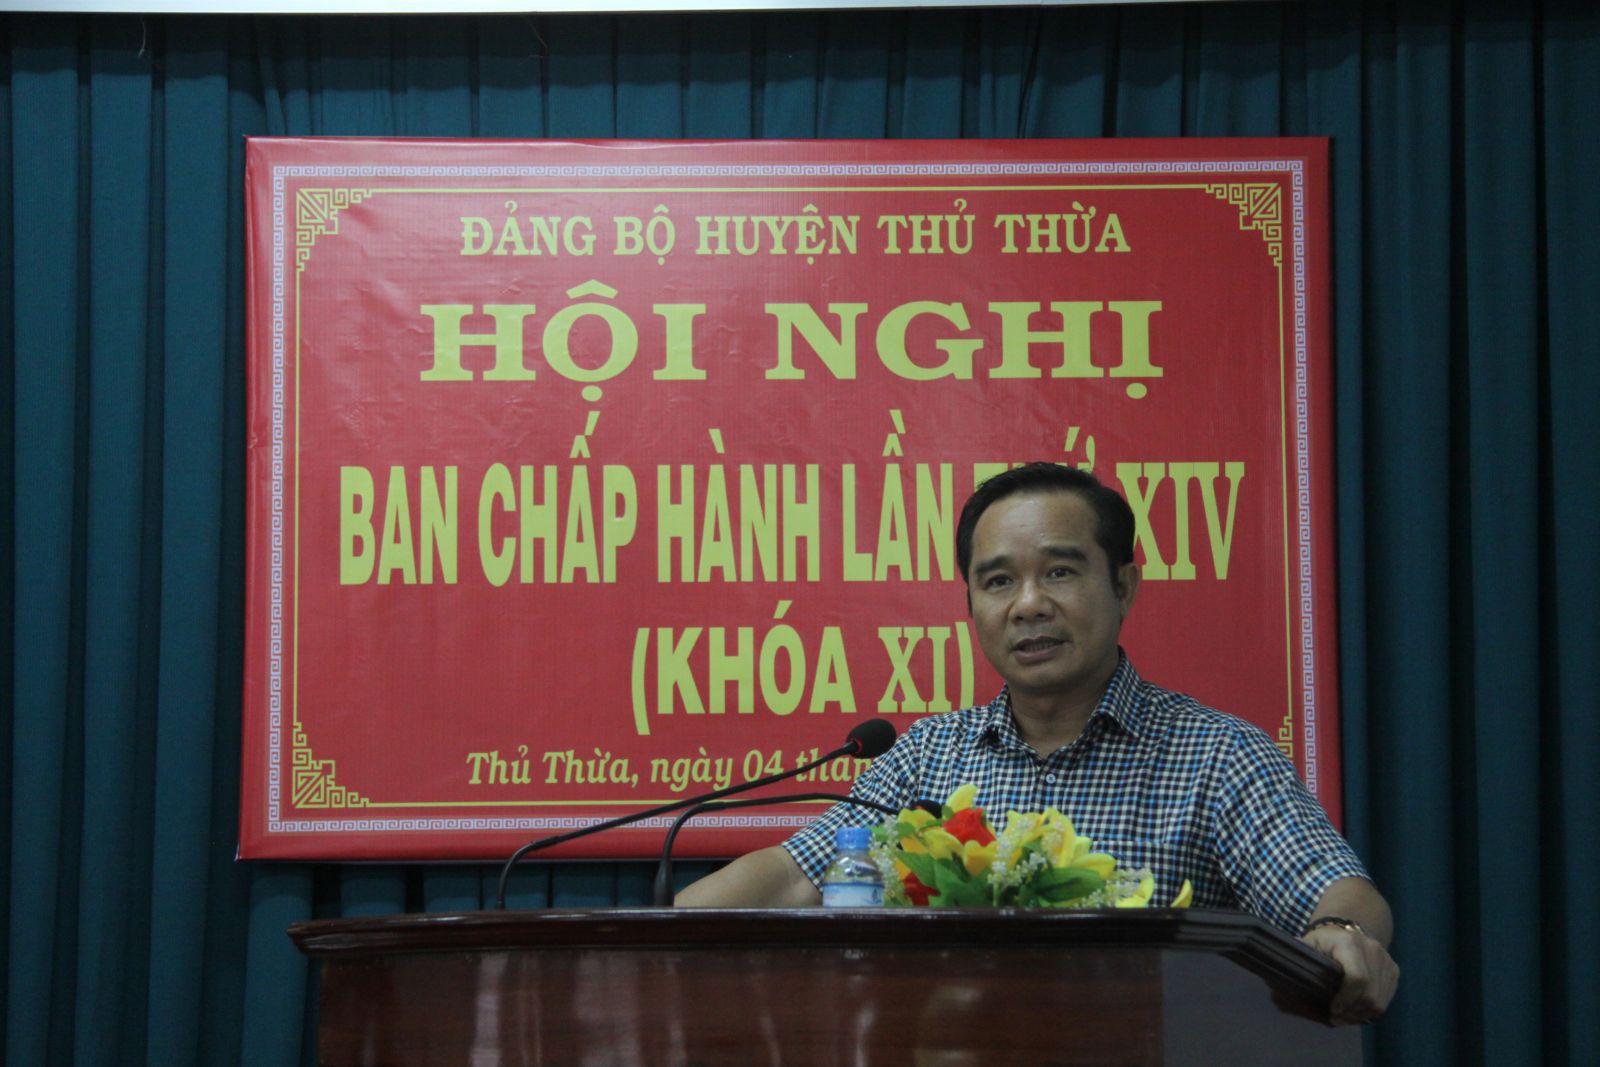 Phó Chủ tịch UBND tỉnh – Nguyễn Văn Được phát biểu chỉ đạo